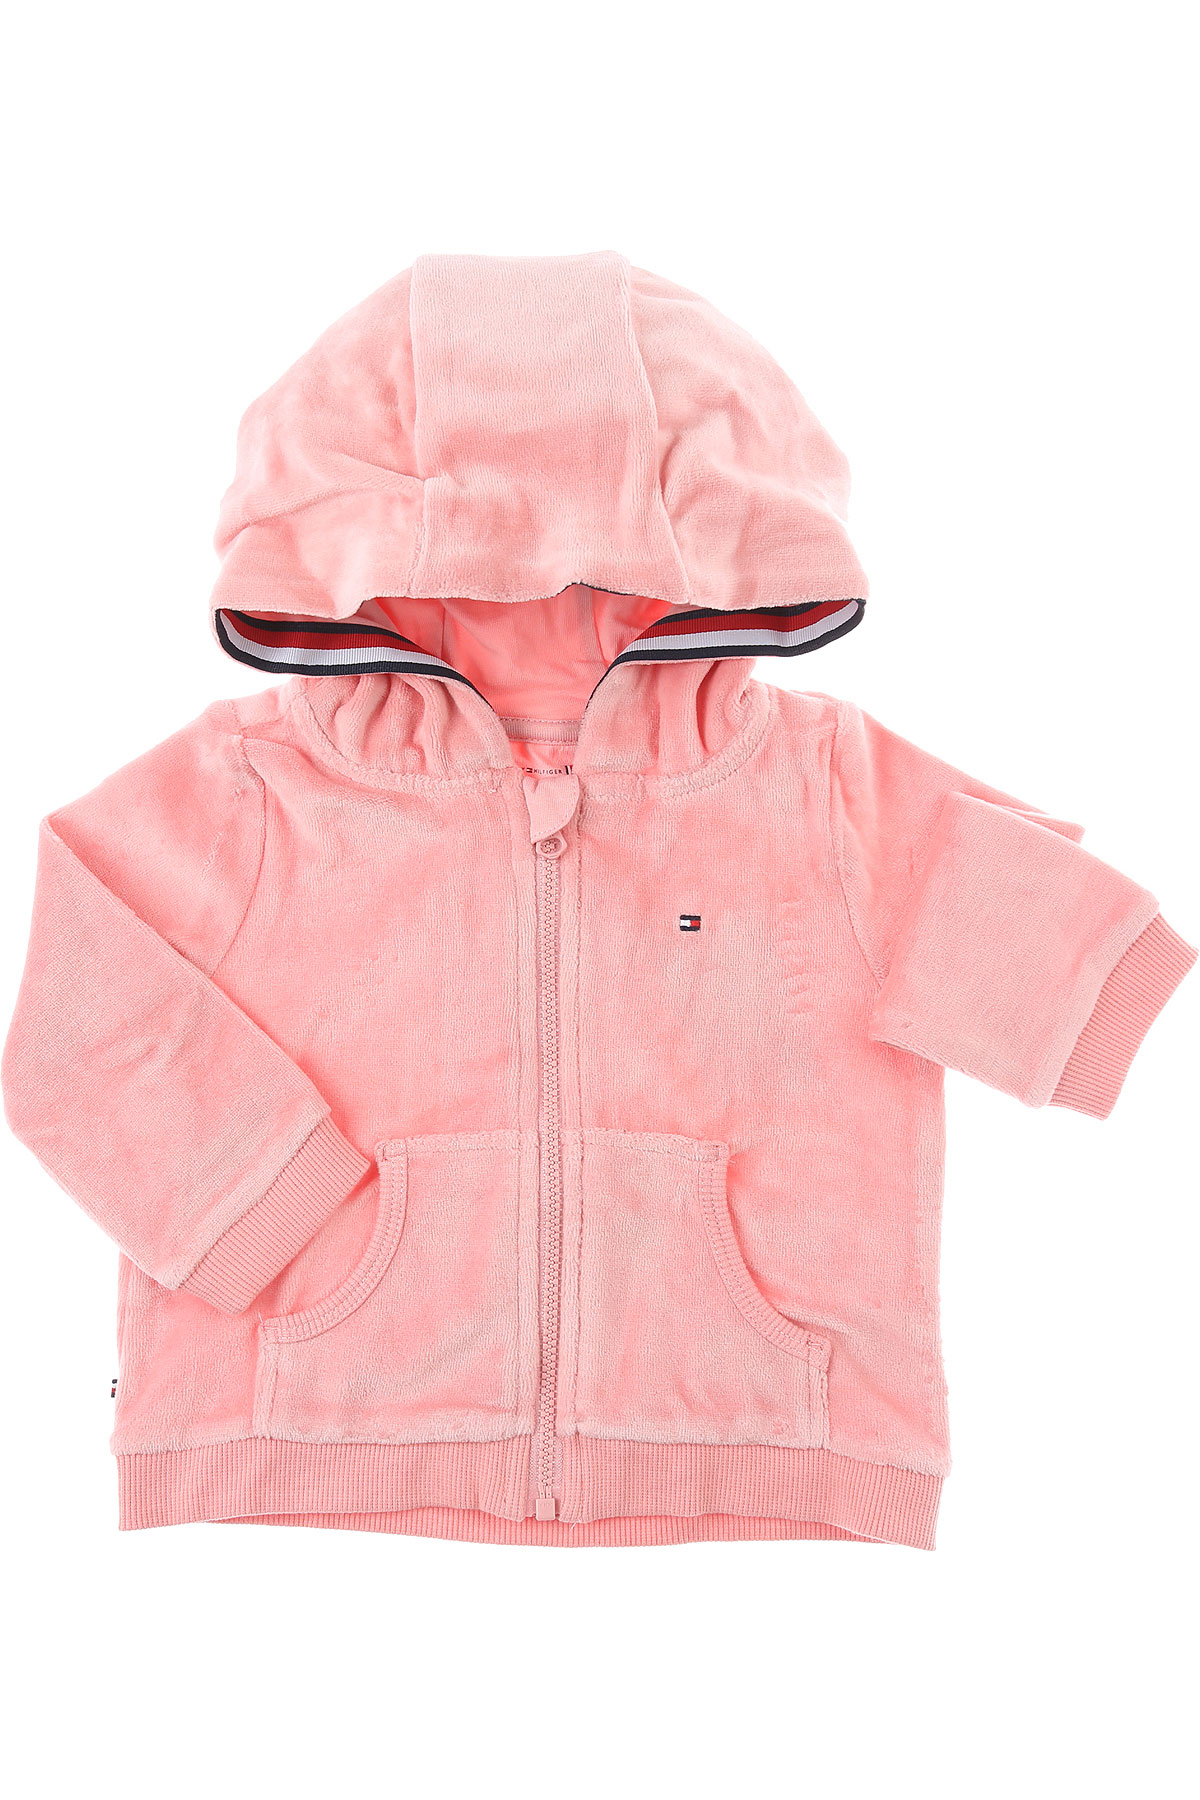 Tommy Hilfiger Baby Sweatshirt & Kapuzenpullover für Mädchen Günstig im Sale, Pink, Baumwolle, 2017, 18M 6M 9M